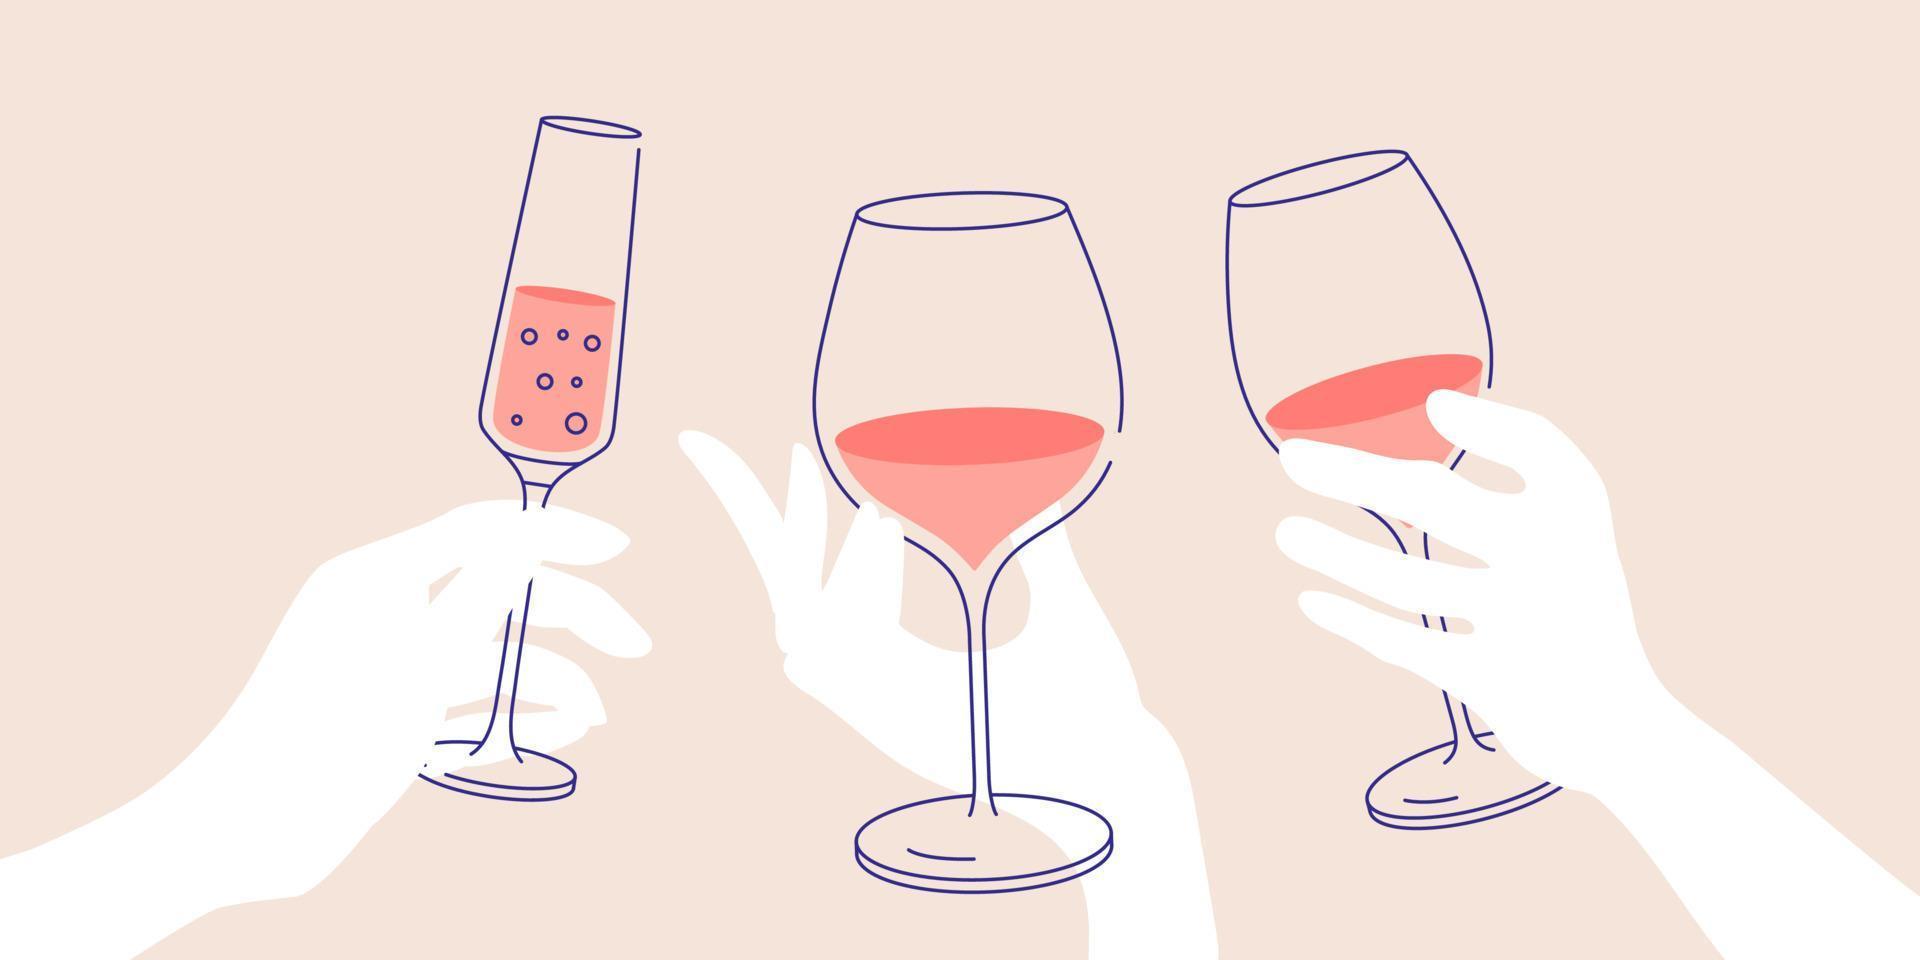 croquis, saludos. mano de mujer sosteniendo una copa de vino blanco, tinto y espumoso. ilustración plana para tarjetas de felicitación, postales, invitaciones, diseño de menú. plantilla de arte lineal vector